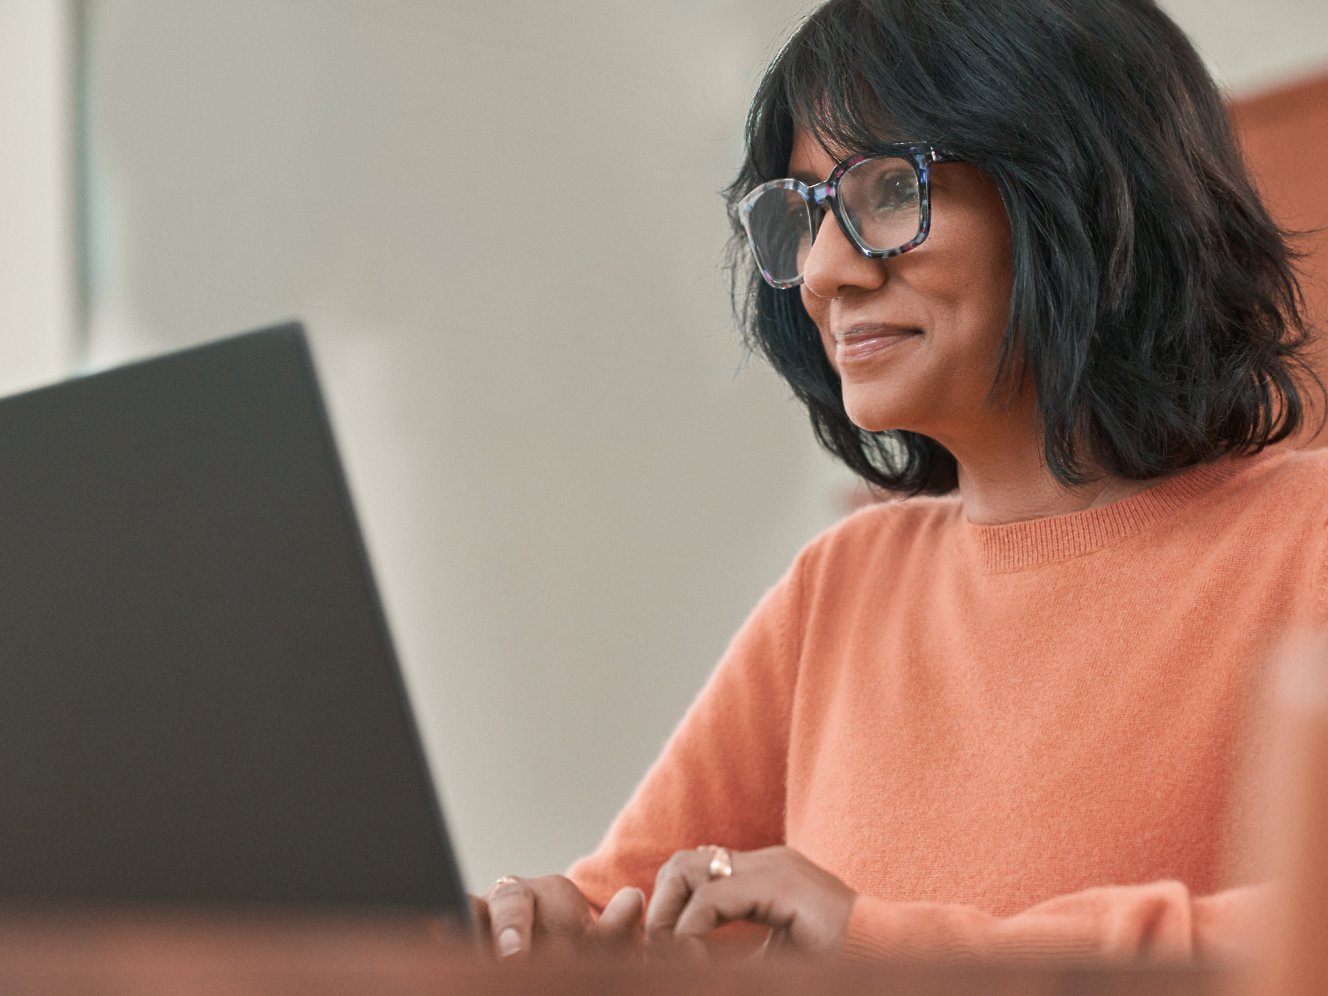 אישה עם משקפיים עובדת עם מחשב נישא